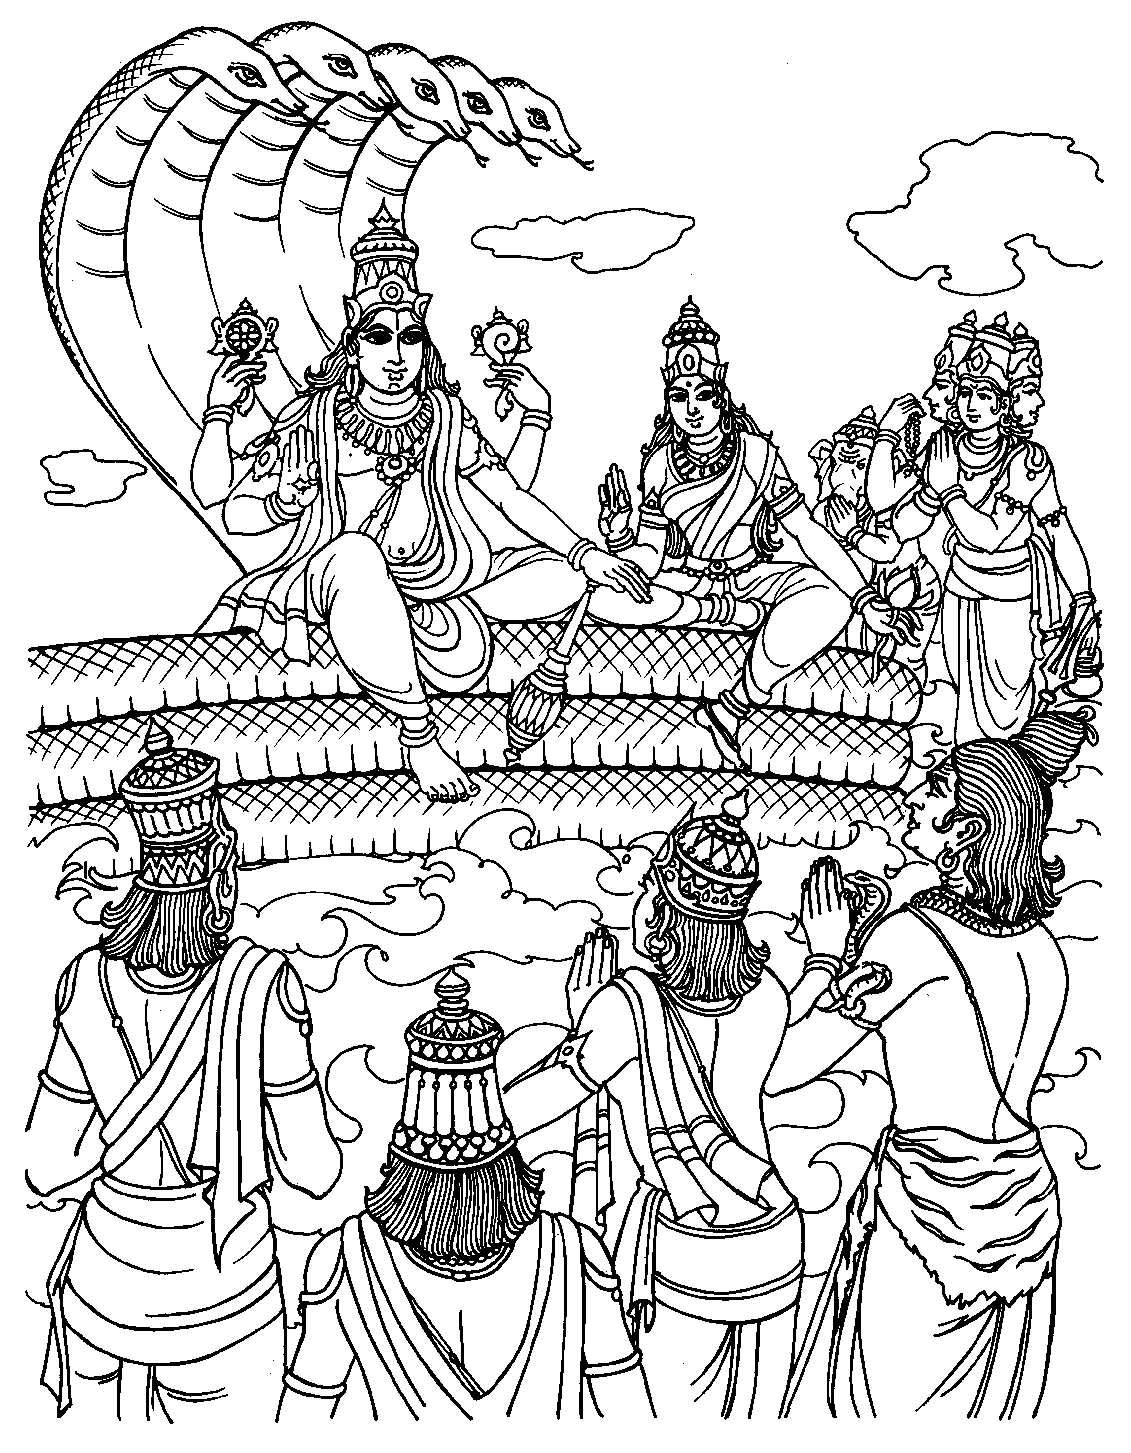 Coloriage de Vishnu qui prend une forme humaine : Rama, pour rendre visite aux hommes